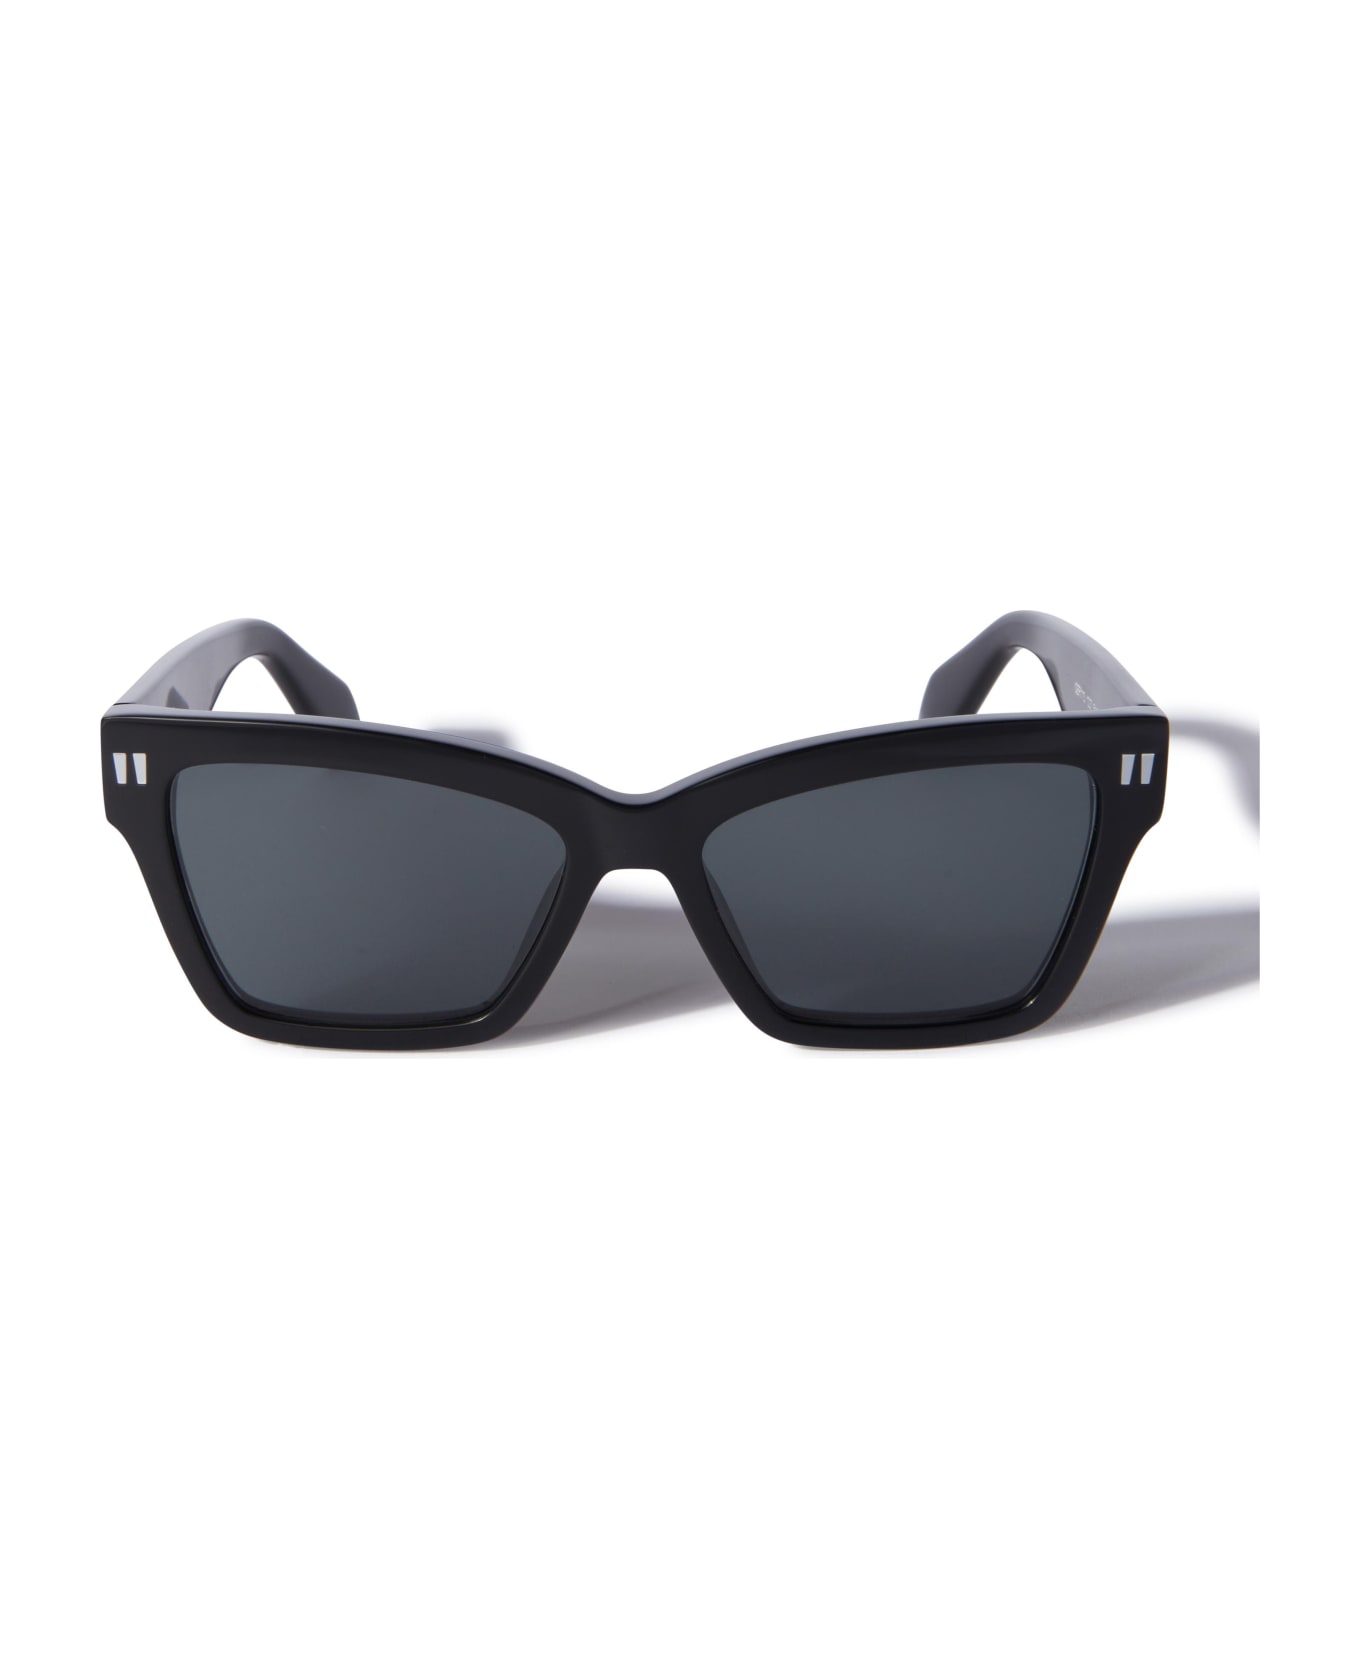 Off-White Sunglasses - Nero/Grigio